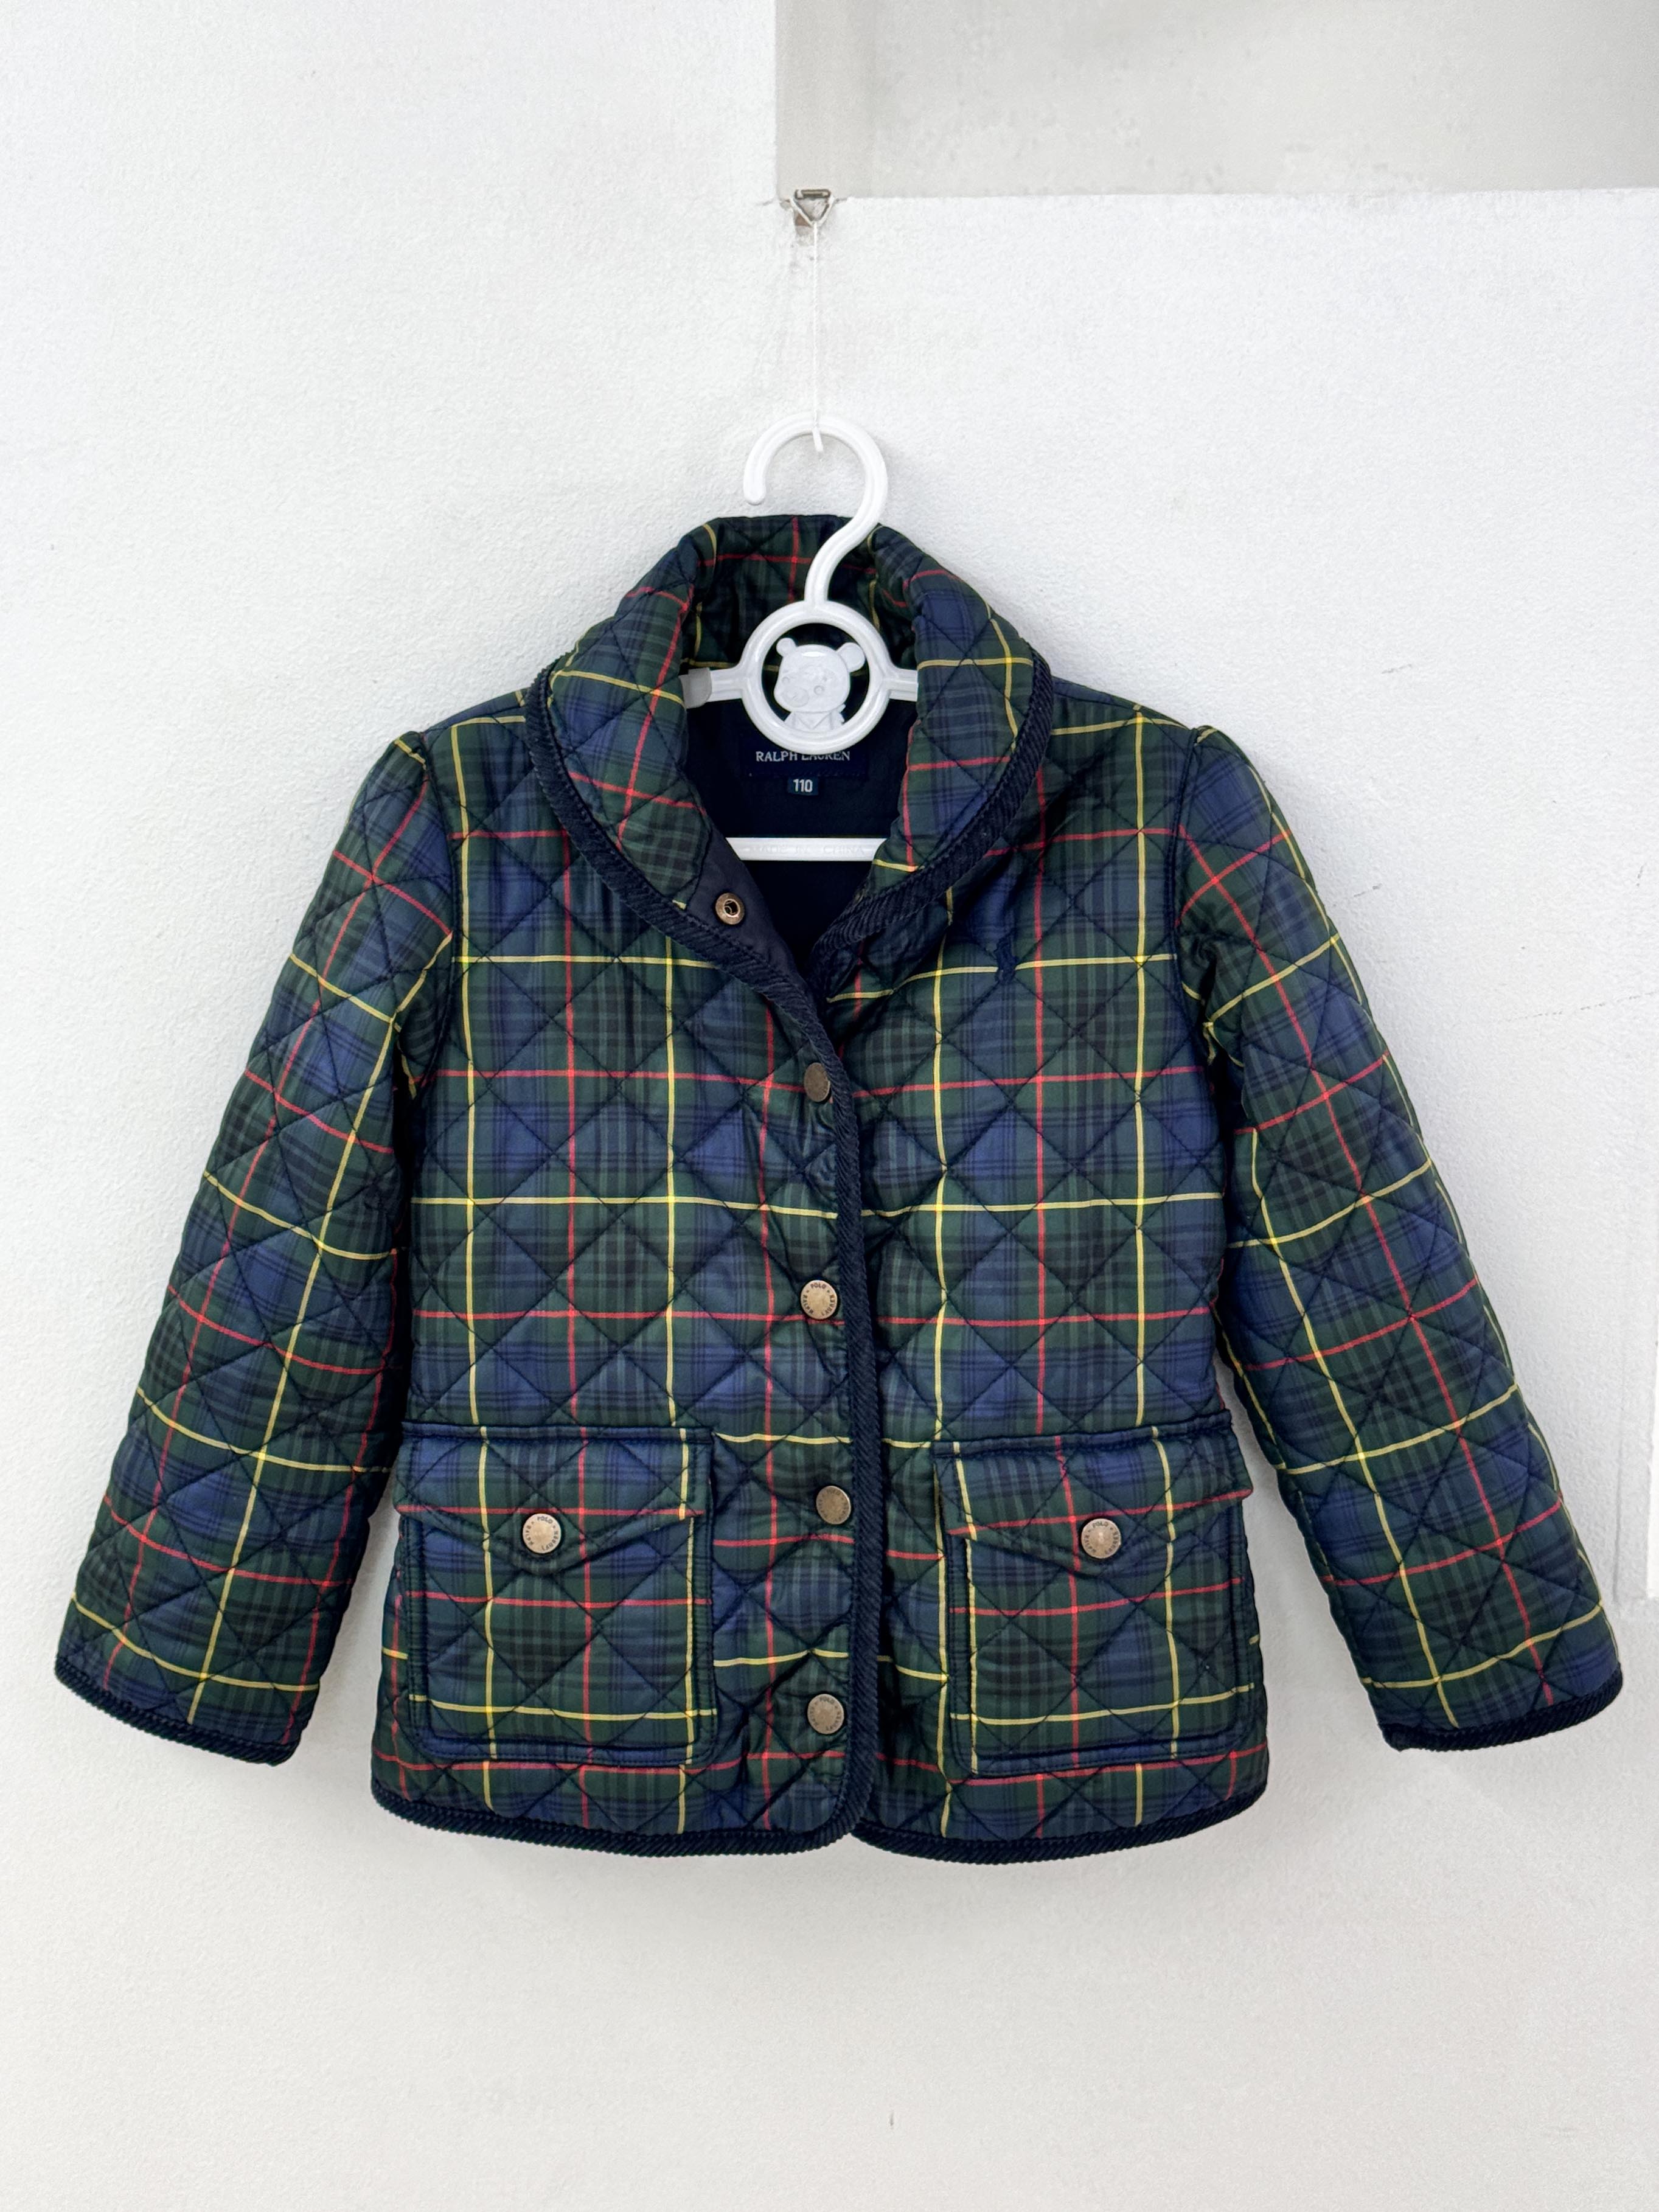 RalphLauren quilting jacket 110 size